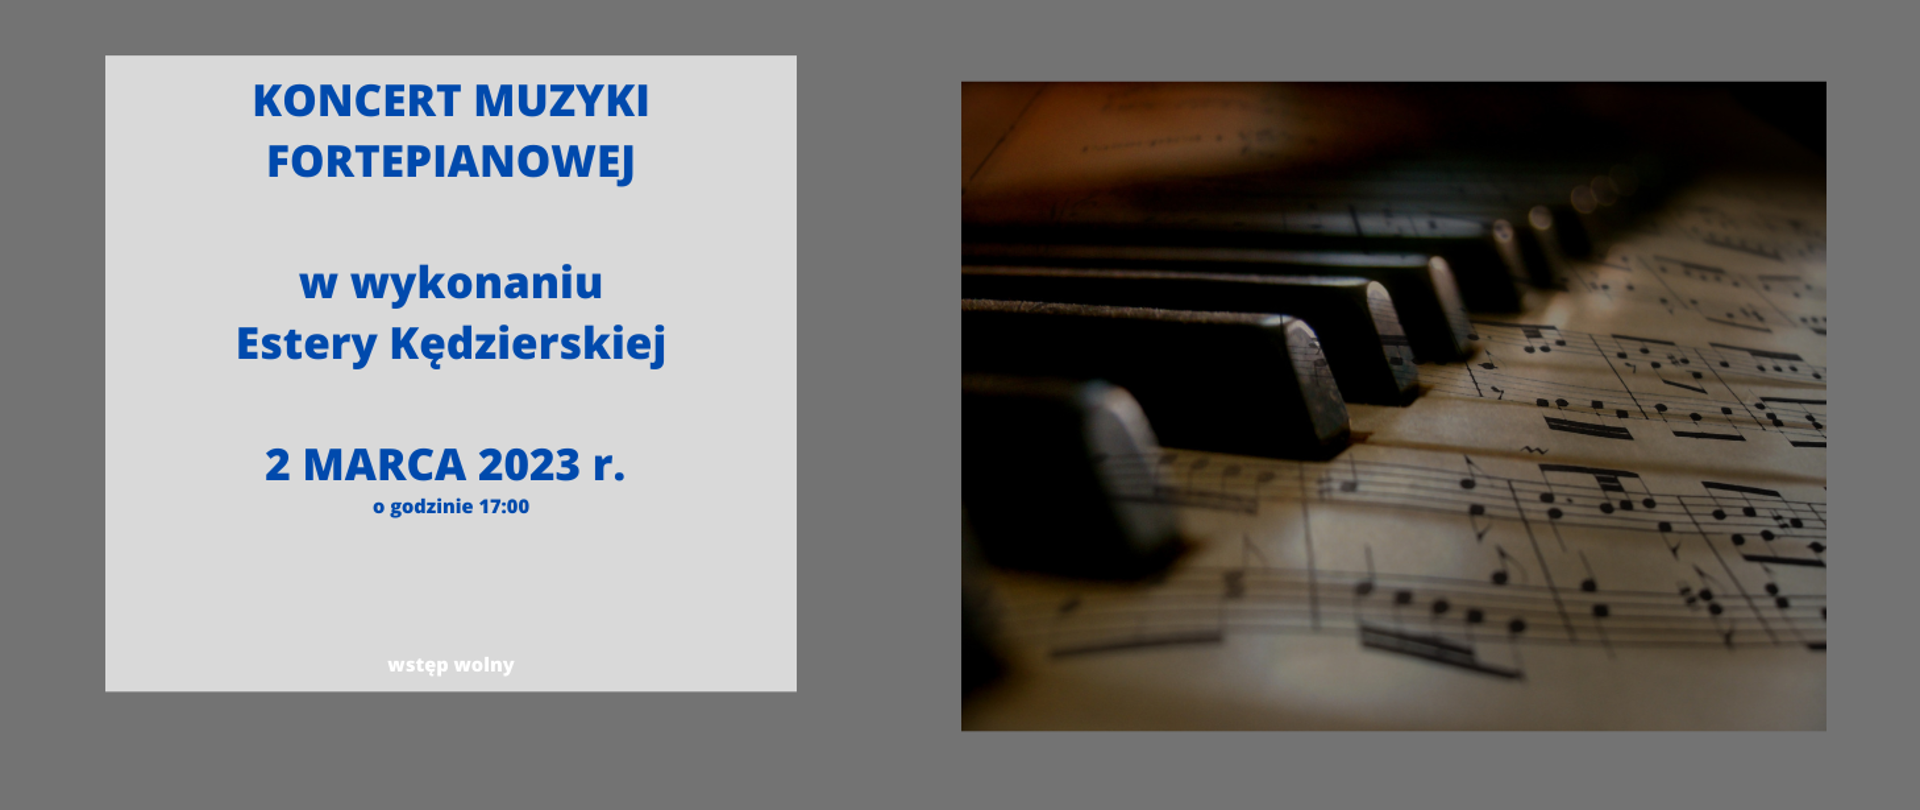 Po prawej strony zdjęcie fragmentu klawiatury fortepianowej z nutami, po lewej zapowiedź: koncert muzyki fortepianowej w wykonaniu Estery Kędzierskiej, 2 marca 2023 r. o godzinie 17:00